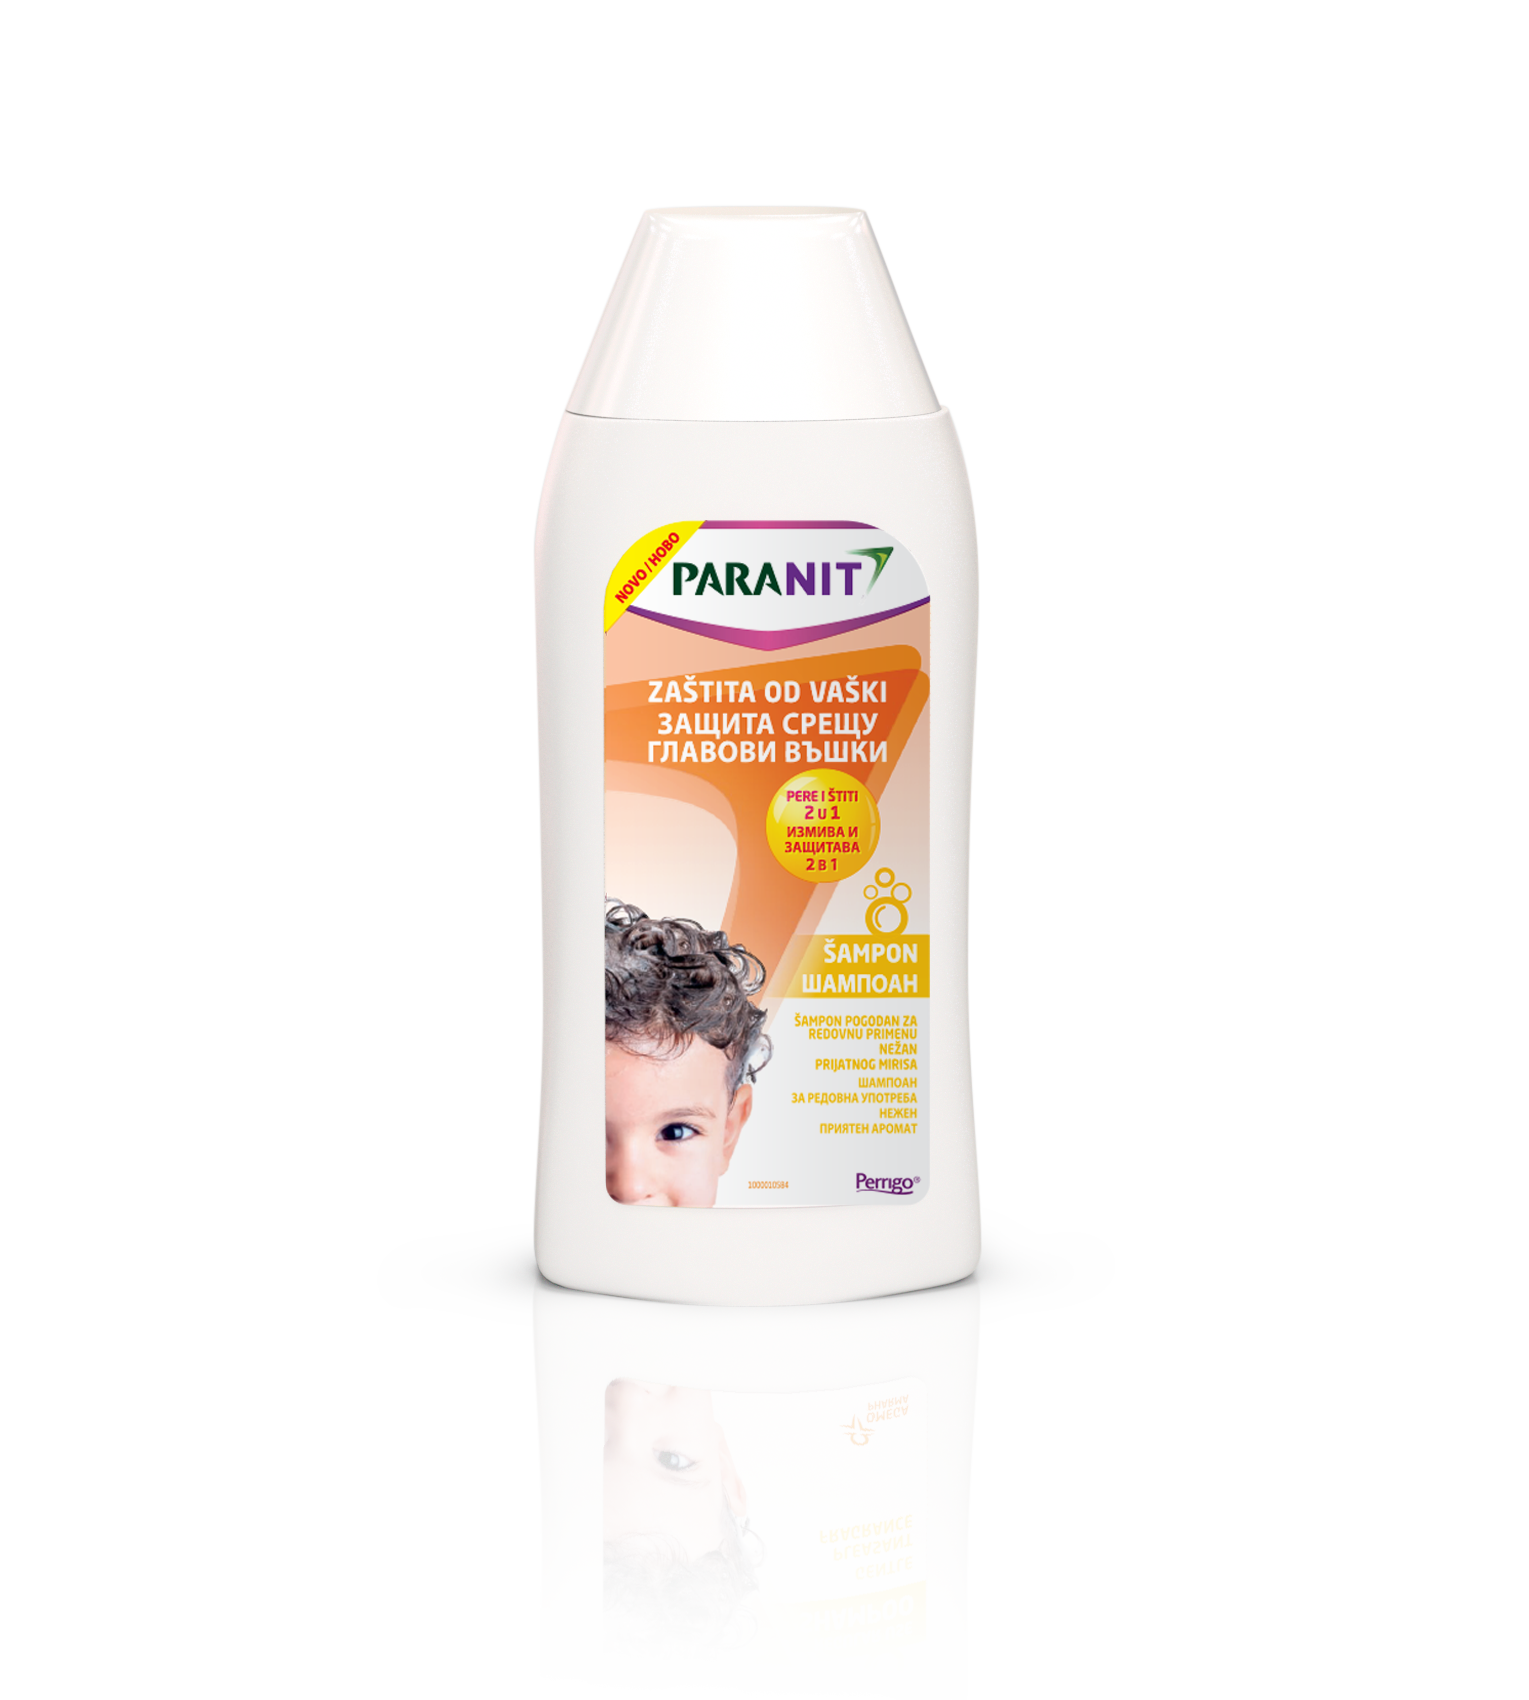 Paranit šampon za zaštitu od vaški